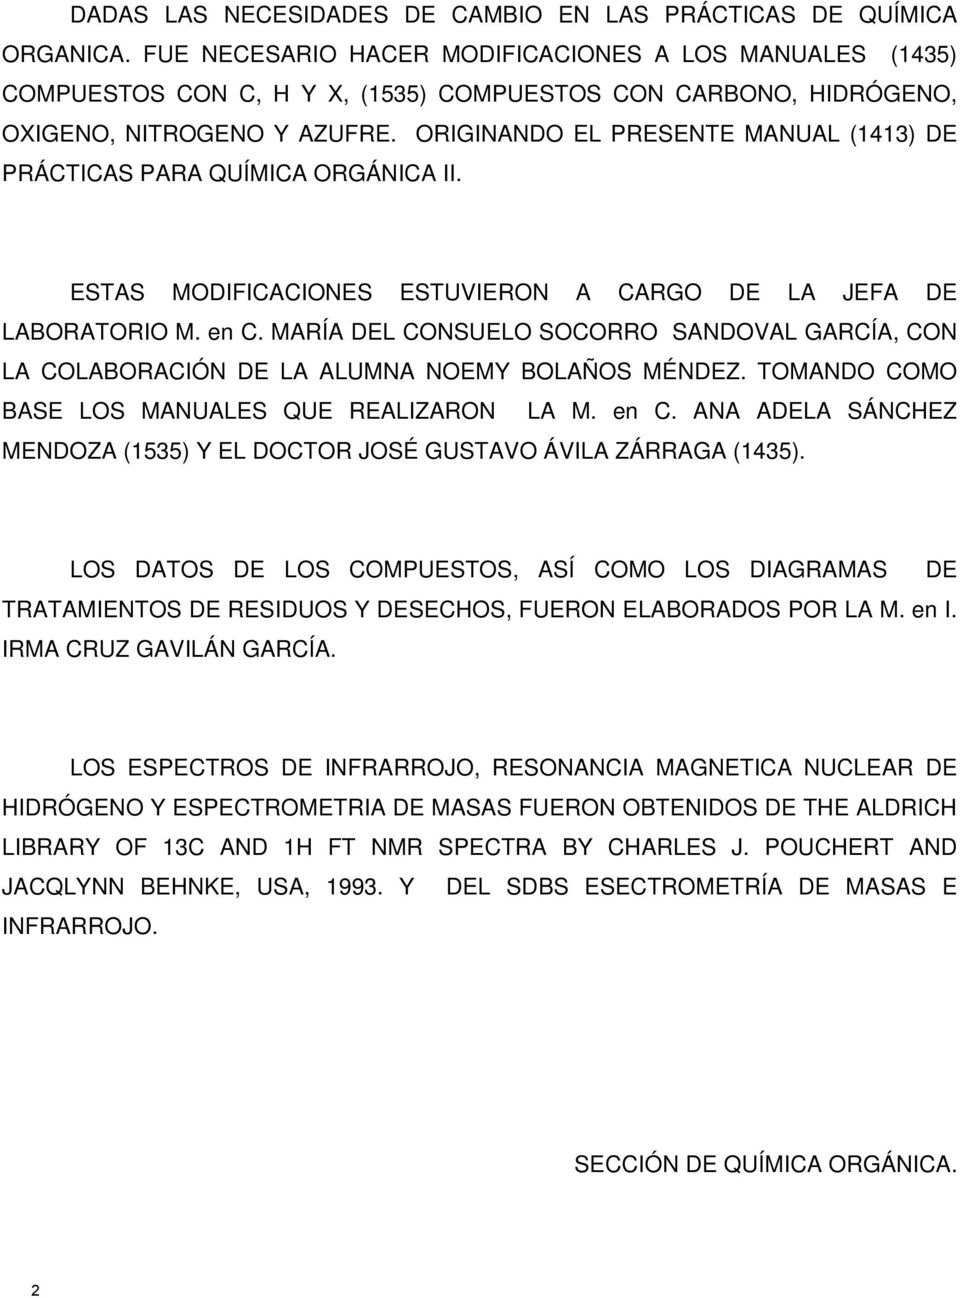 ORIGINANDO EL PRESENTE MANUAL (1413) DE PRÁCTICAS PARA QUÍMICA ORGÁNICA II. ESTAS MODIFICACIONES ESTUVIERON A CARGO DE LA JEFA DE LABORATORIO M. en C.